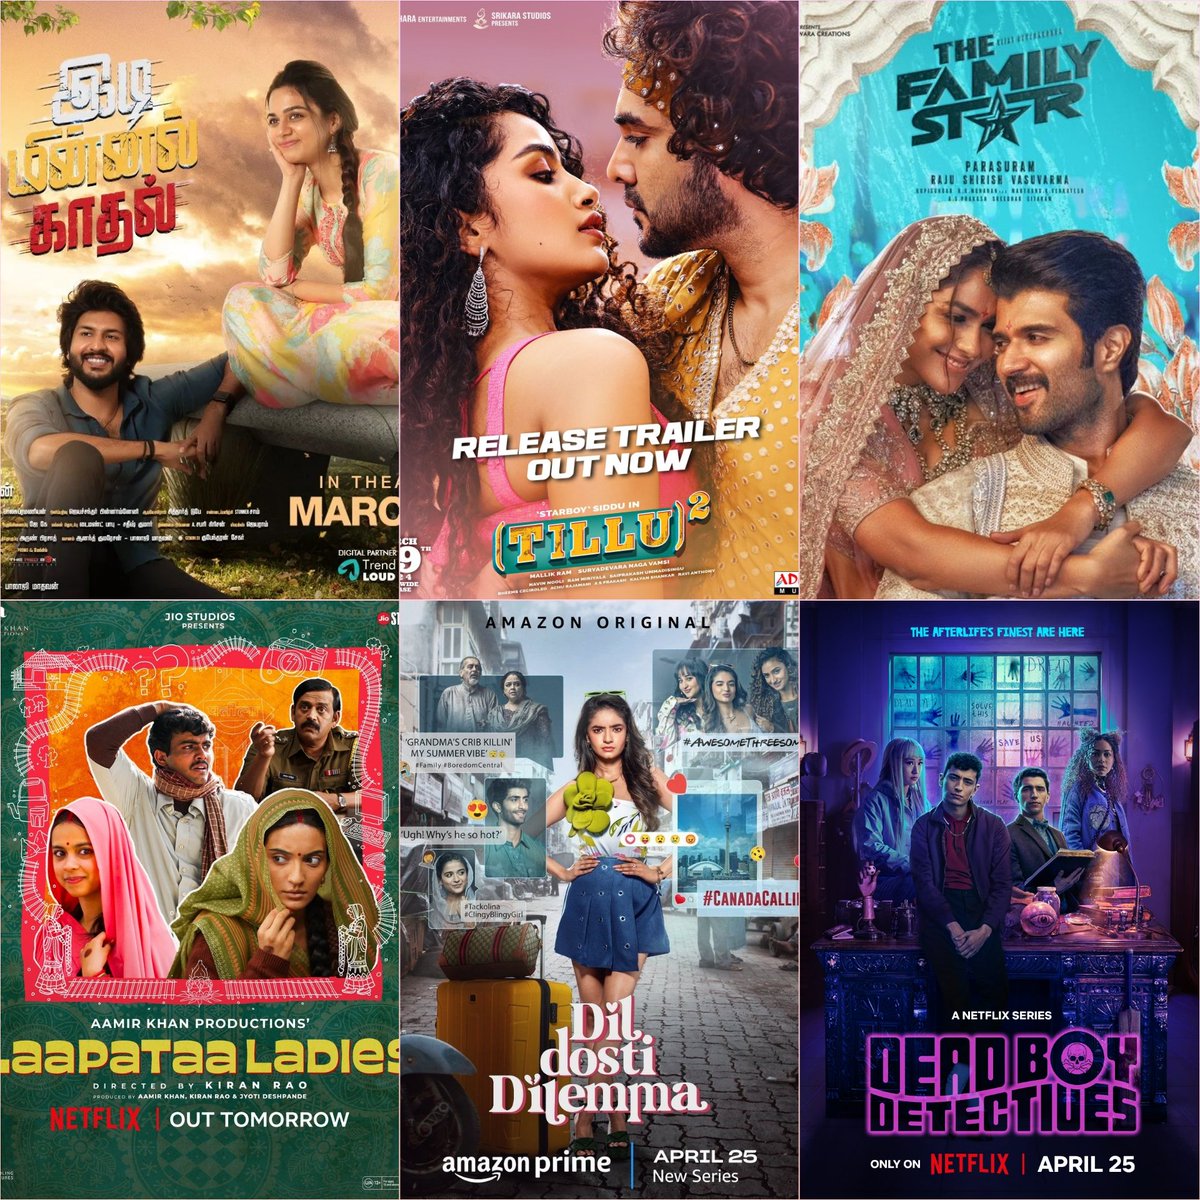 OTT Releases This Week

#VeppamKulirMazhai (Tamil) - Aha
#LaapataaLadies (Hindi) - Netflix 
#IdiMinnalKaadhal (Tamil) - Aha
#TilluSquare (Telugu) - Netflix
#TheFamilyStar (Telugu) - Prime
#DilDostiDilemma (Hindi) - Prime Series
#DeadBoyDetectives (English) - Netflix Series